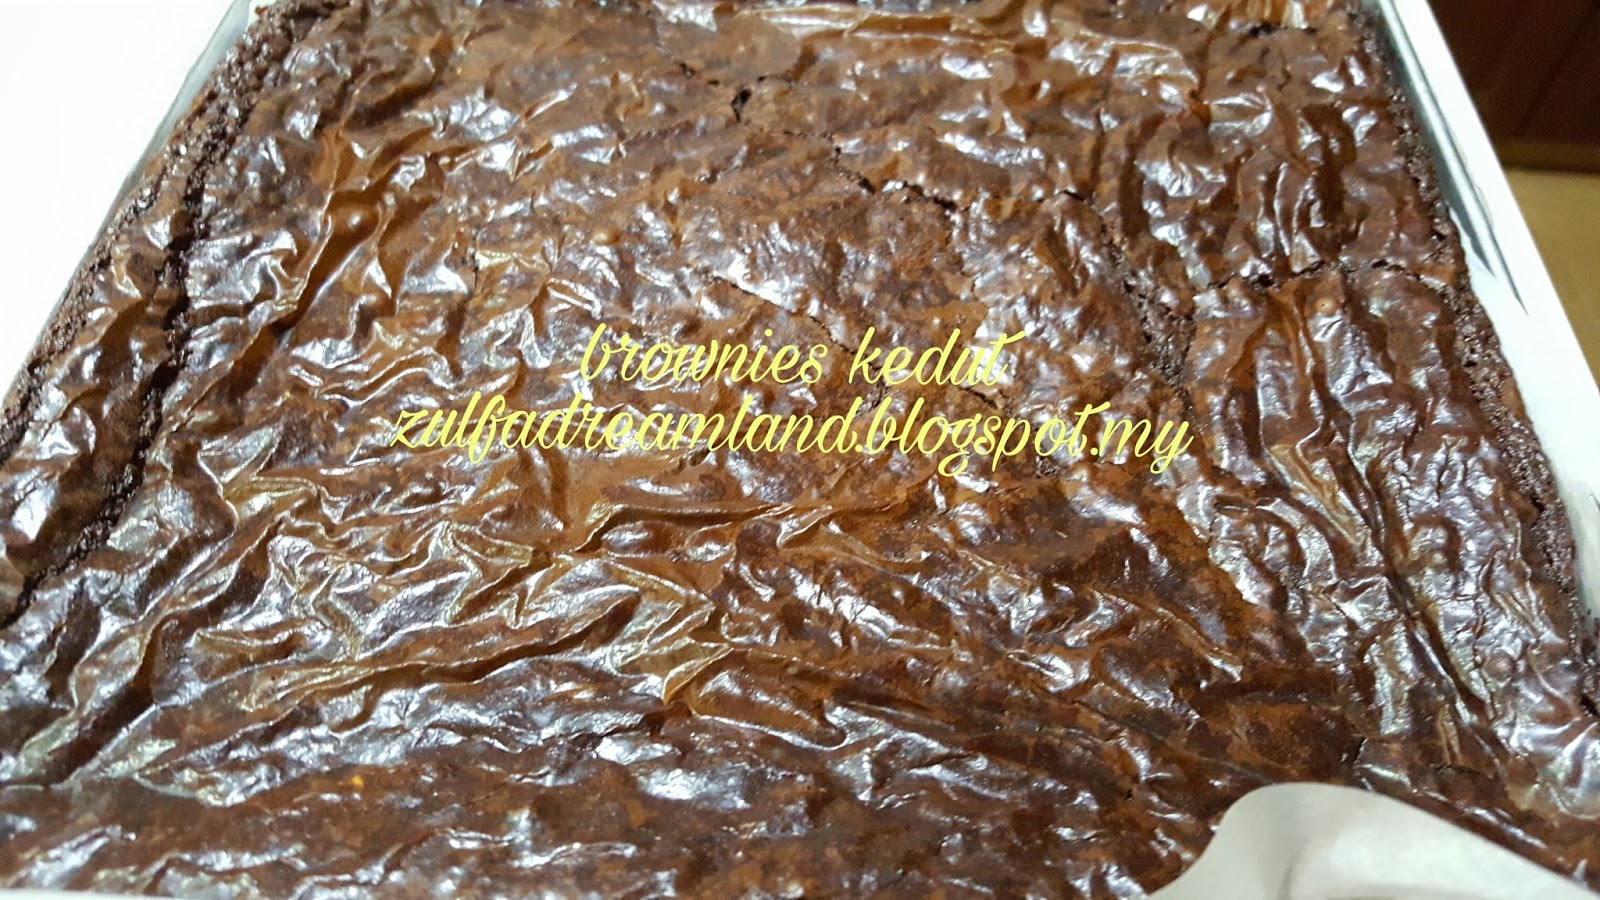 ZULFAZA LOVES COOKING: Brownies Kedut